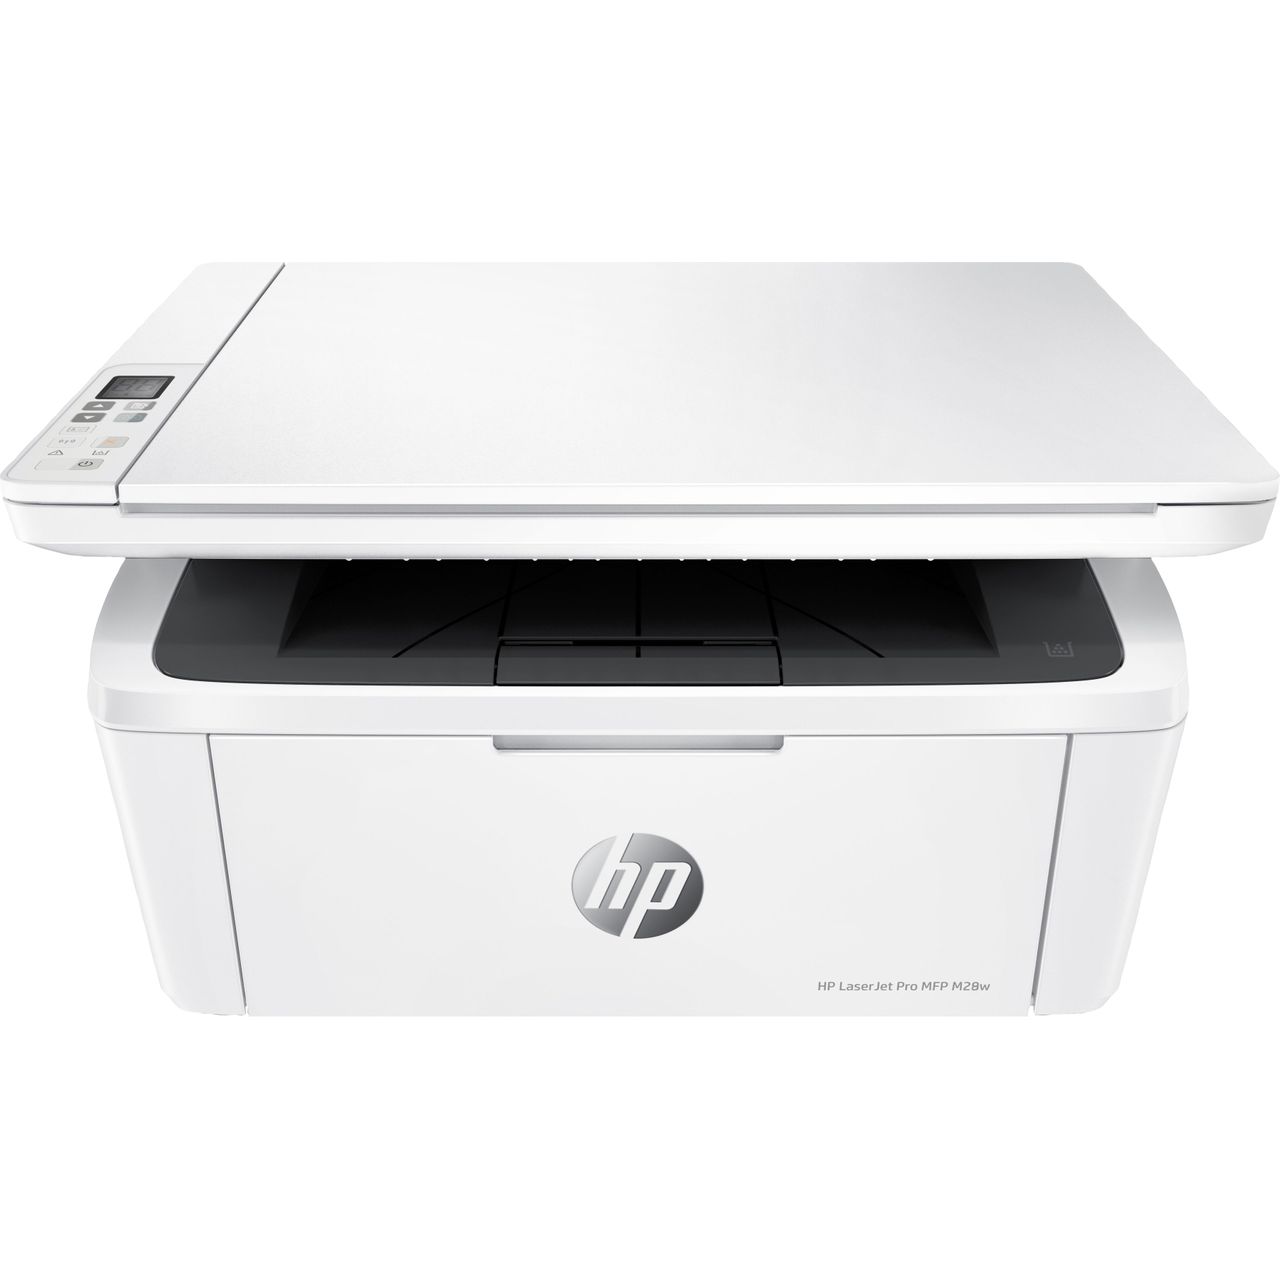 HP LaserJet Pro MFP M28w Laser Printer Review